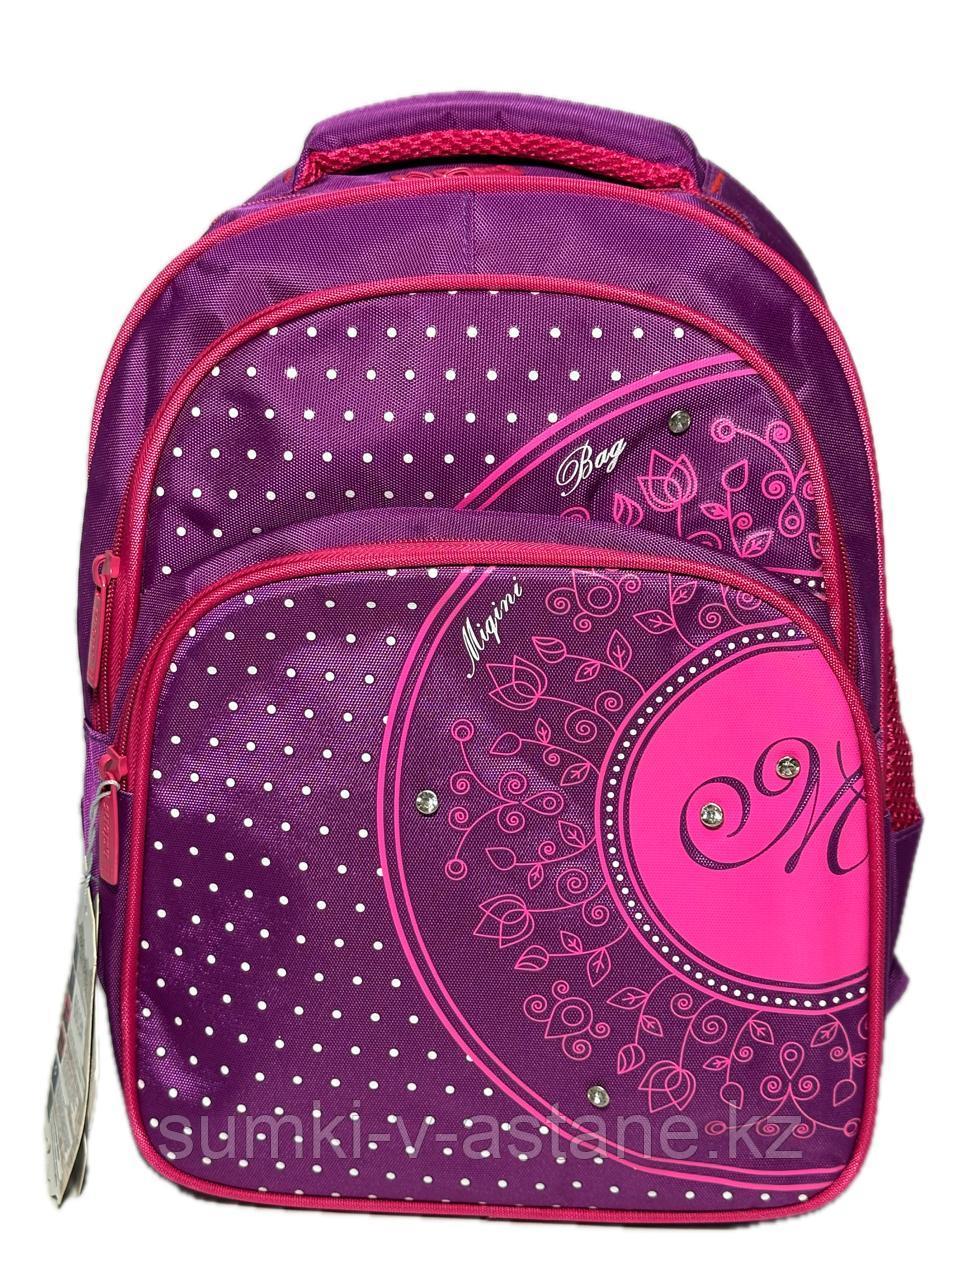 Школьный рюкзак "Migini", для девочек в начальные классы. Высота 36 см, ширина 27 см. глубина 17 см.